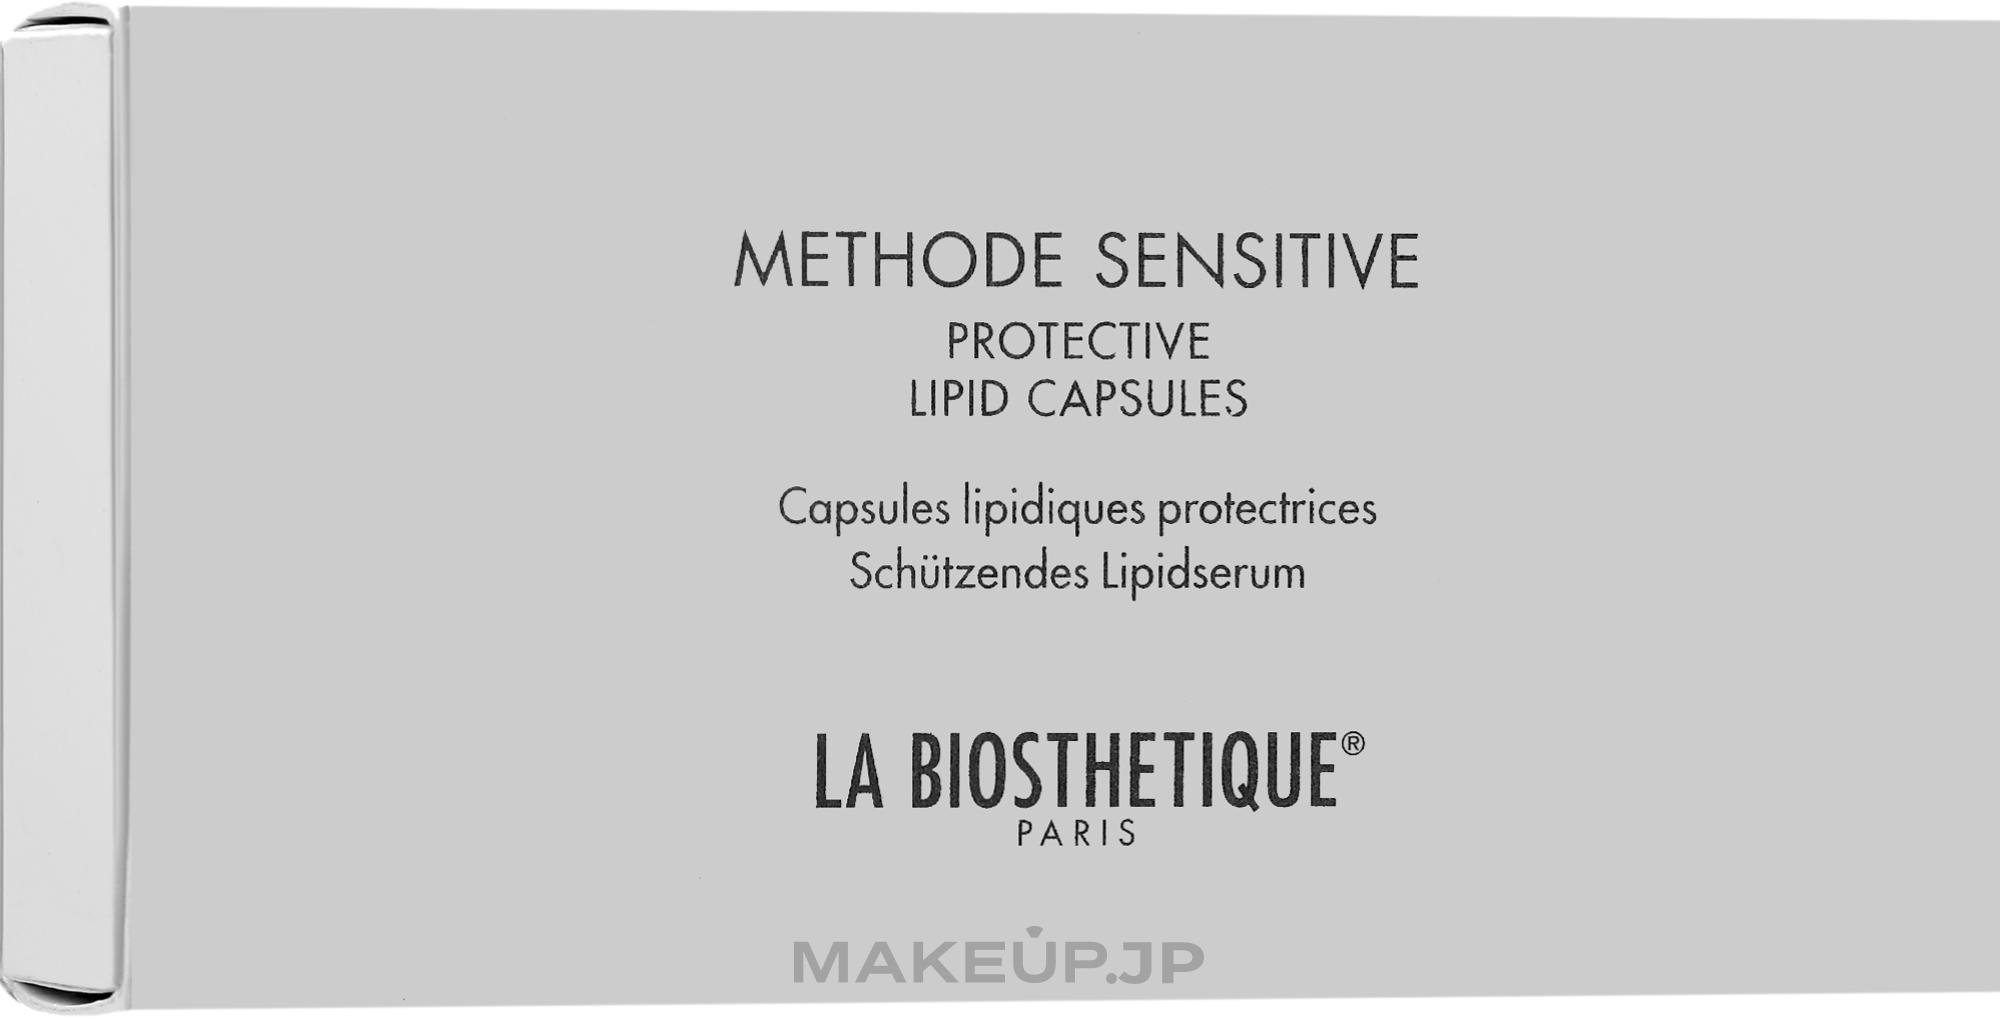 Face Capsules - La Biosthetique Methode Sensitive Protective Lipid Capsules — photo 7 szt.